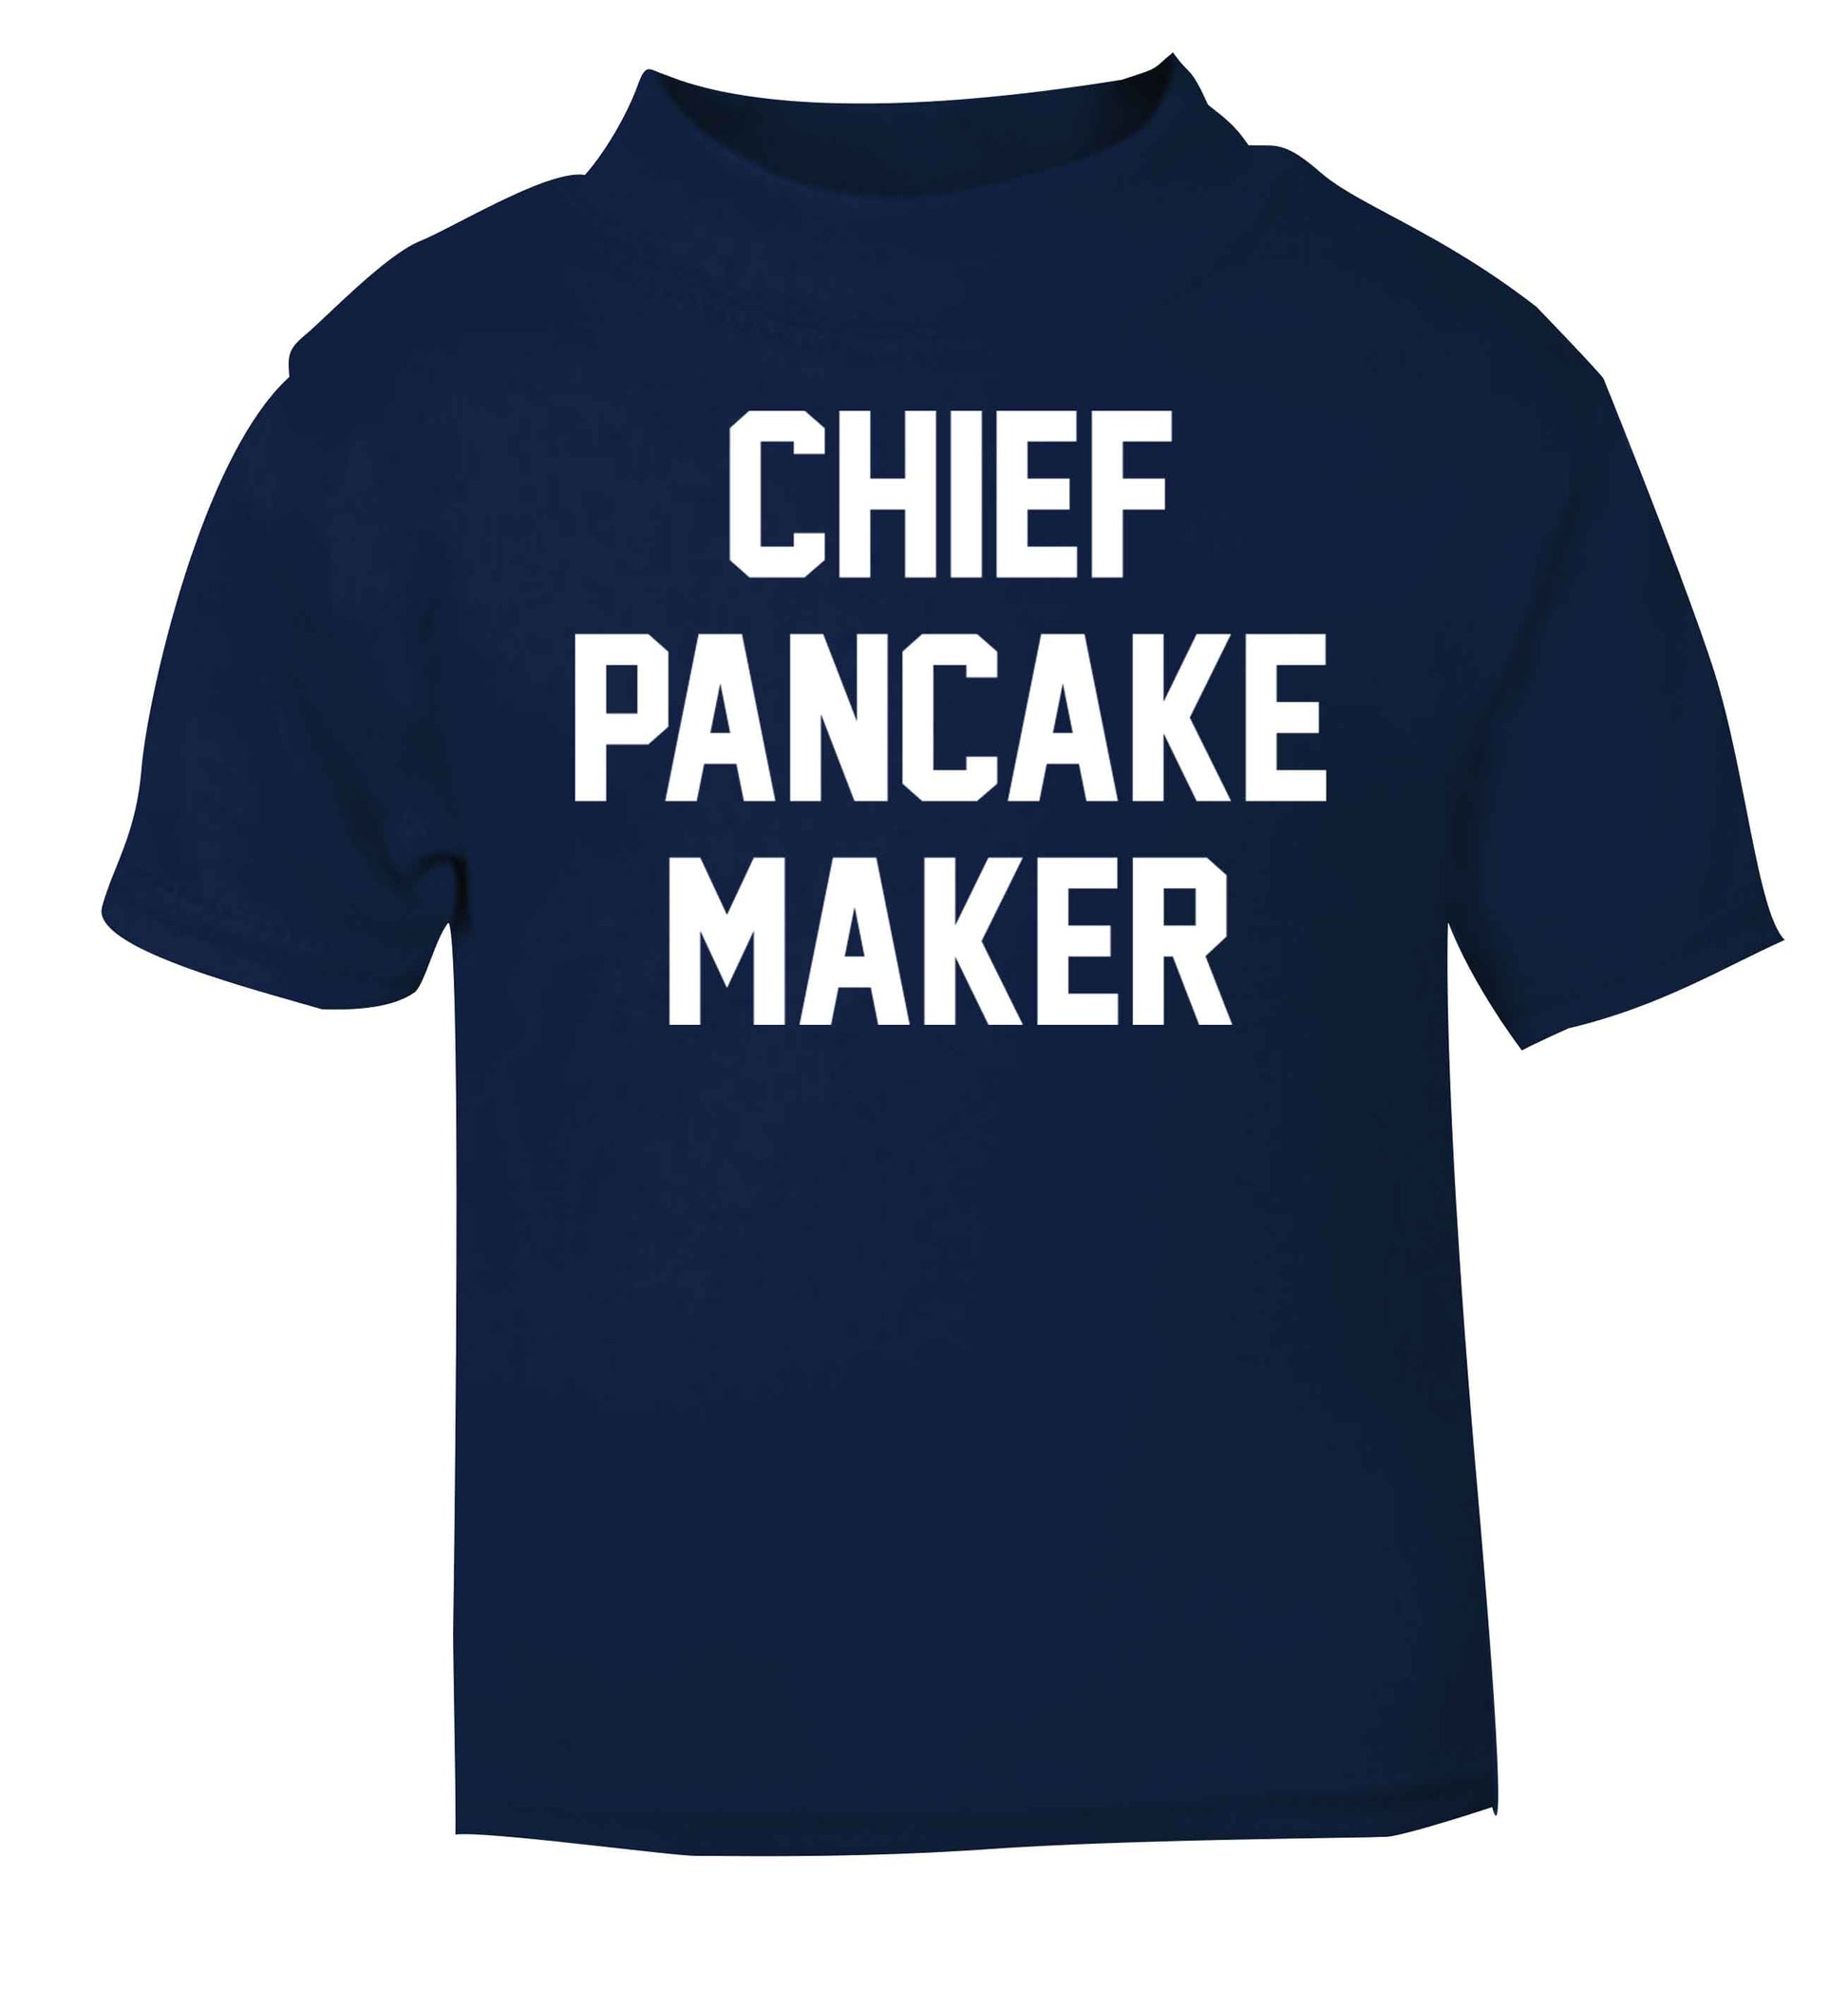 Chief pancake maker navy baby toddler Tshirt 2 Years